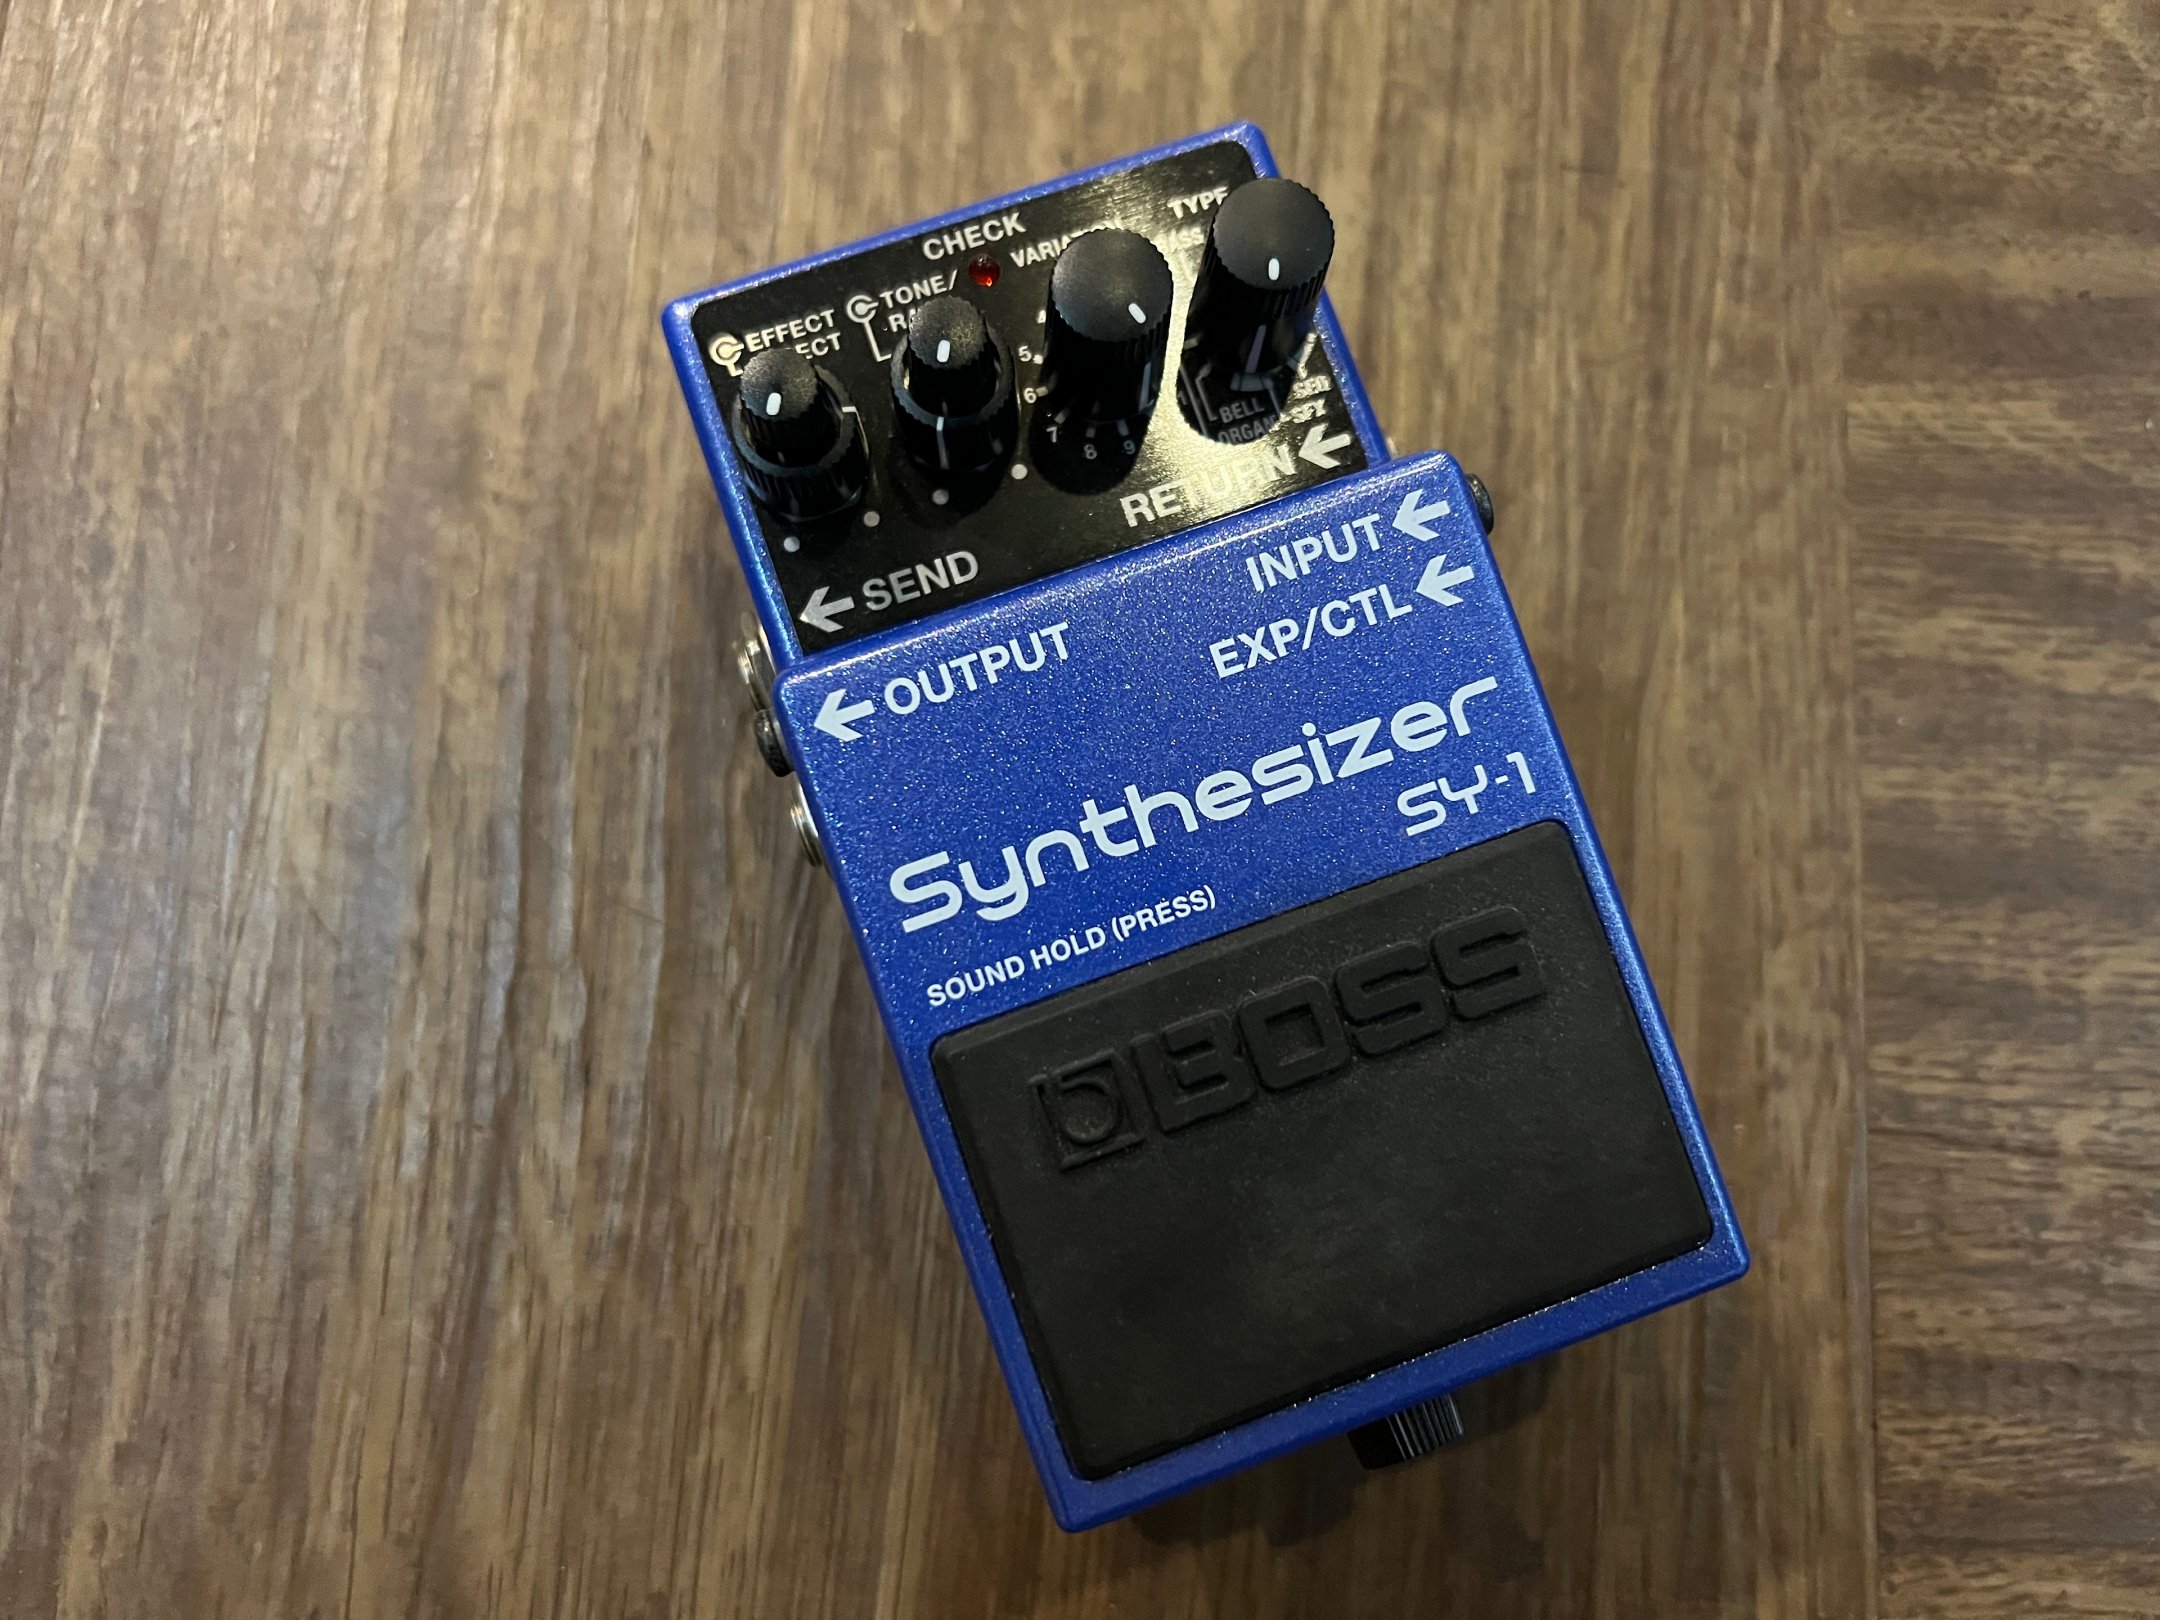 BOSS SY-1 ボスのギターシンセテクノロジーを凝縮したコンパクト